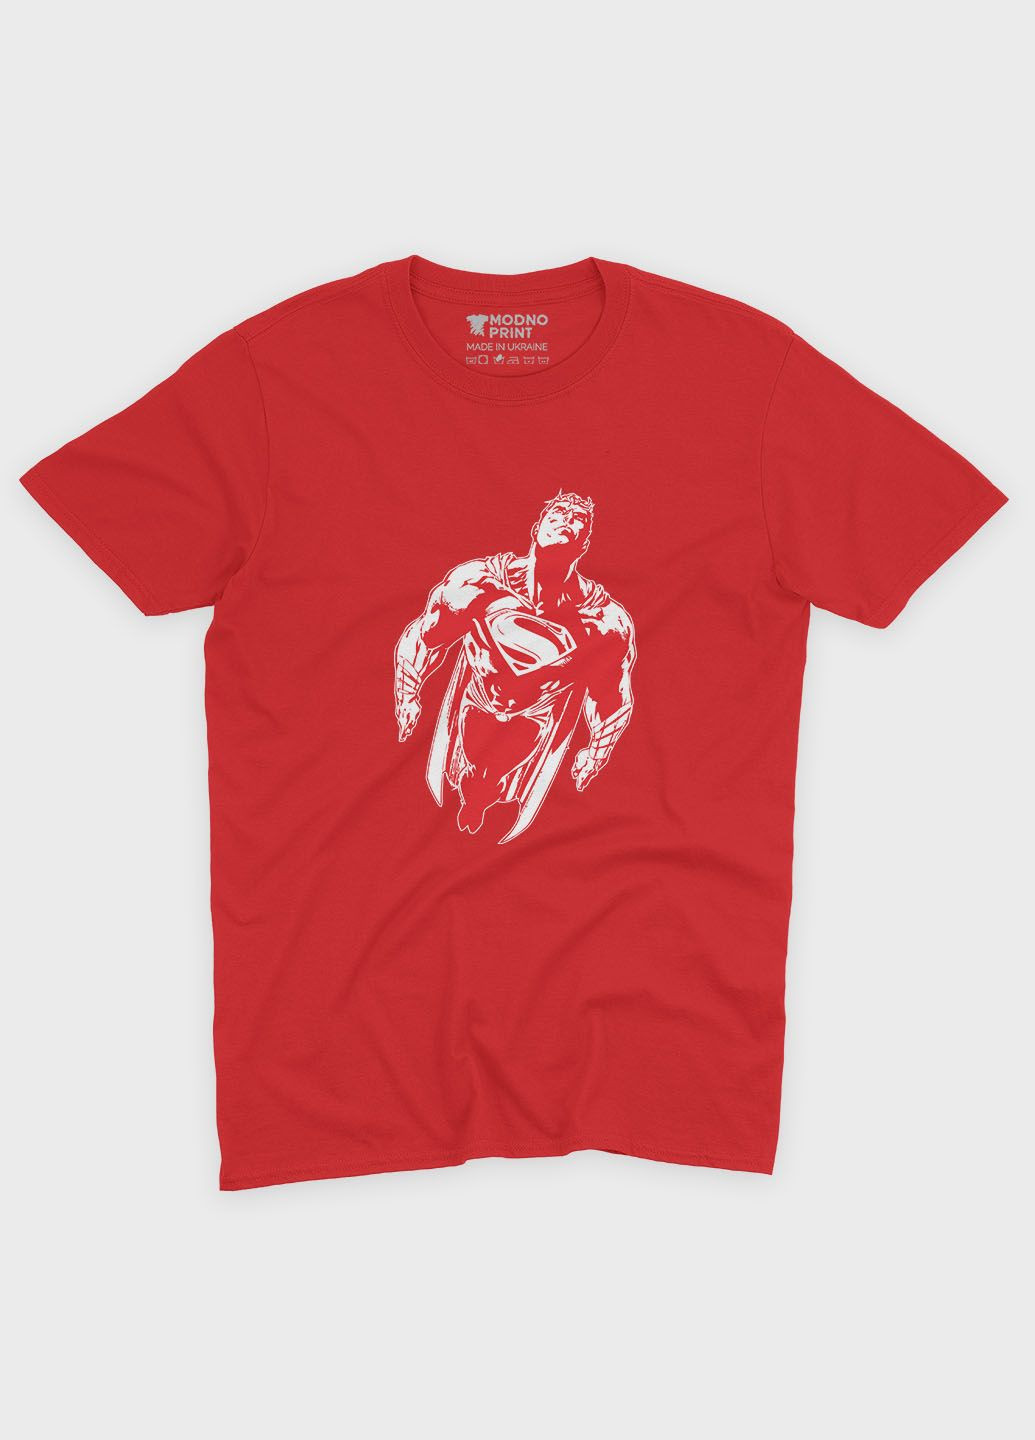 Красная демисезонная футболка для мальчика с принтом супергероя - супермен (ts001-1-sre-006-009-001-b) Modno